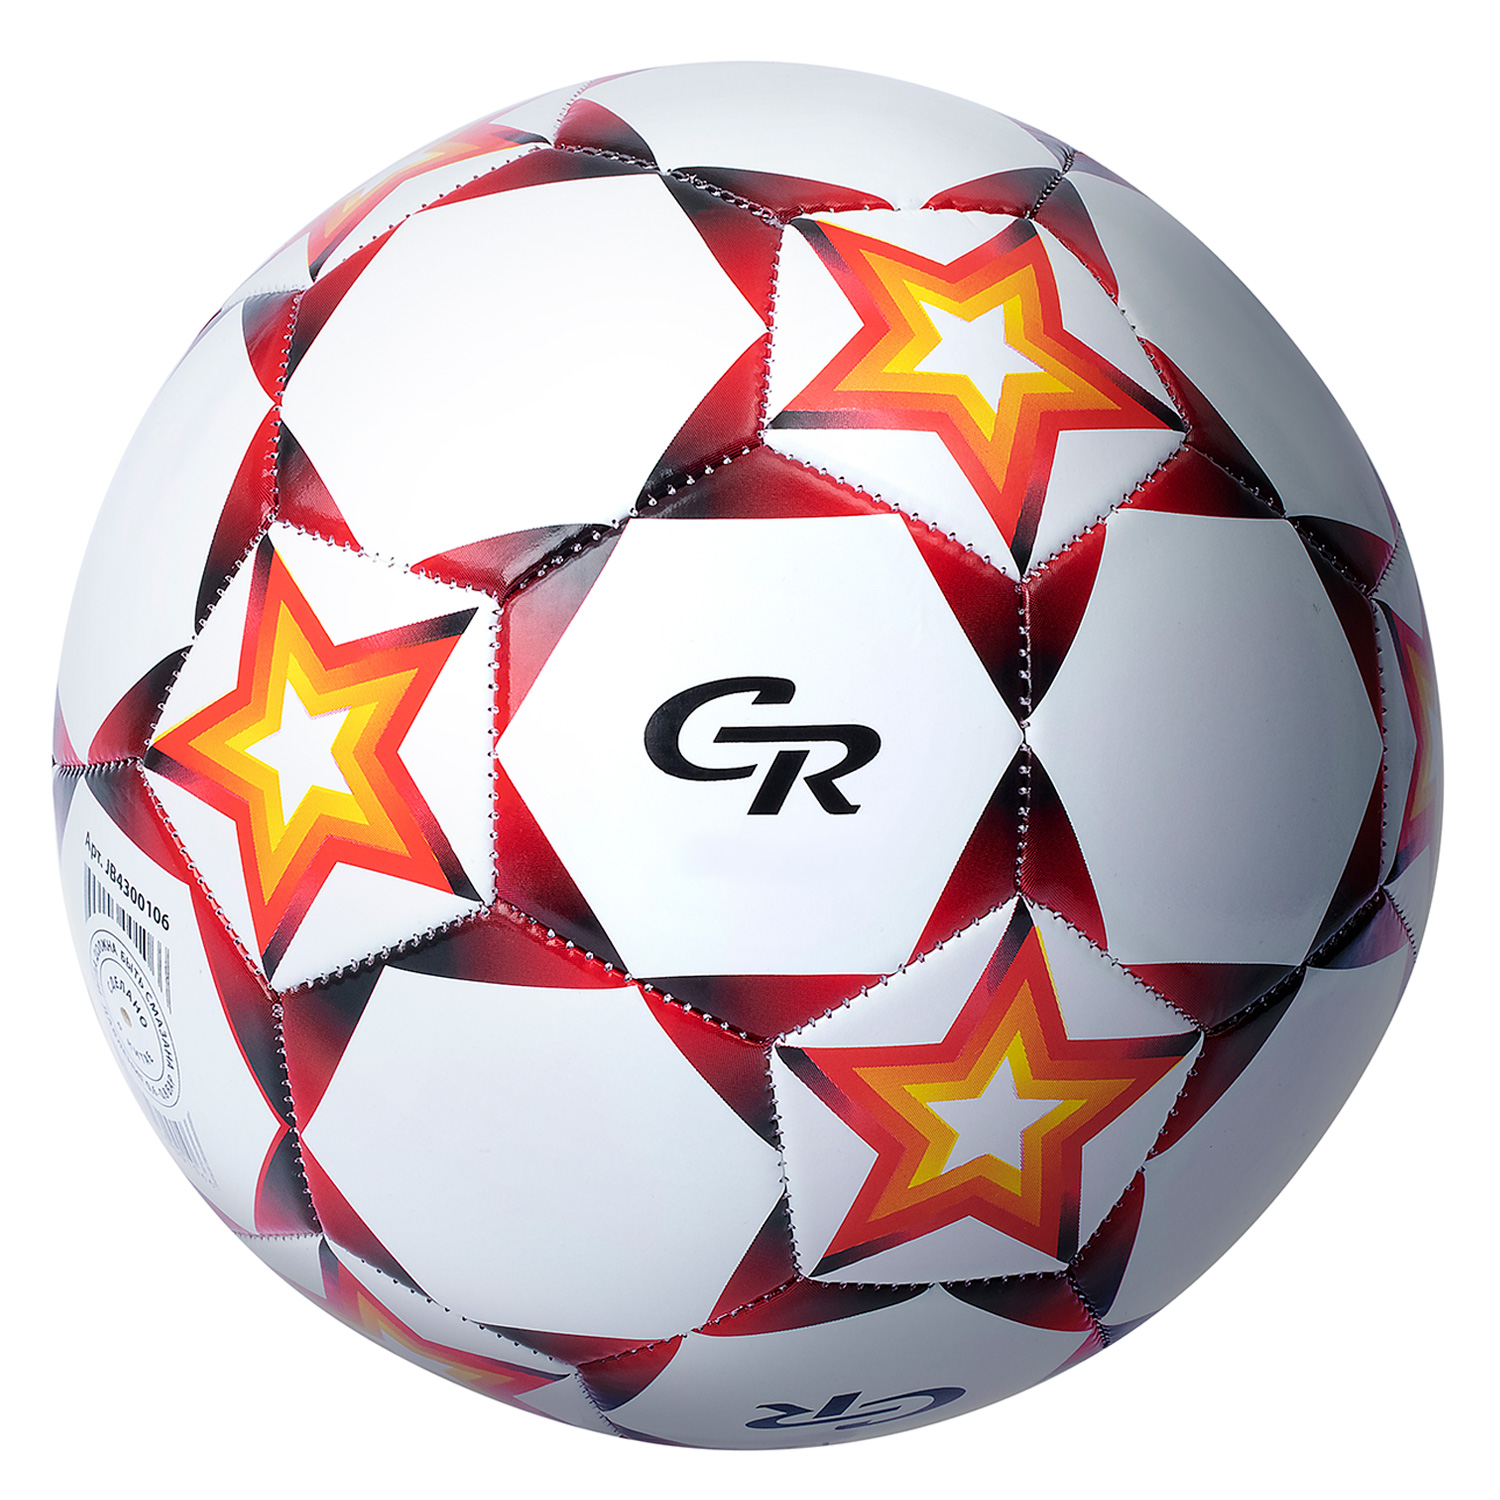 Мяч футбольный City Ride, 3-слойный, сшитые панели, ПВХ, 300г, размер 5, диаметр 22 см в/п